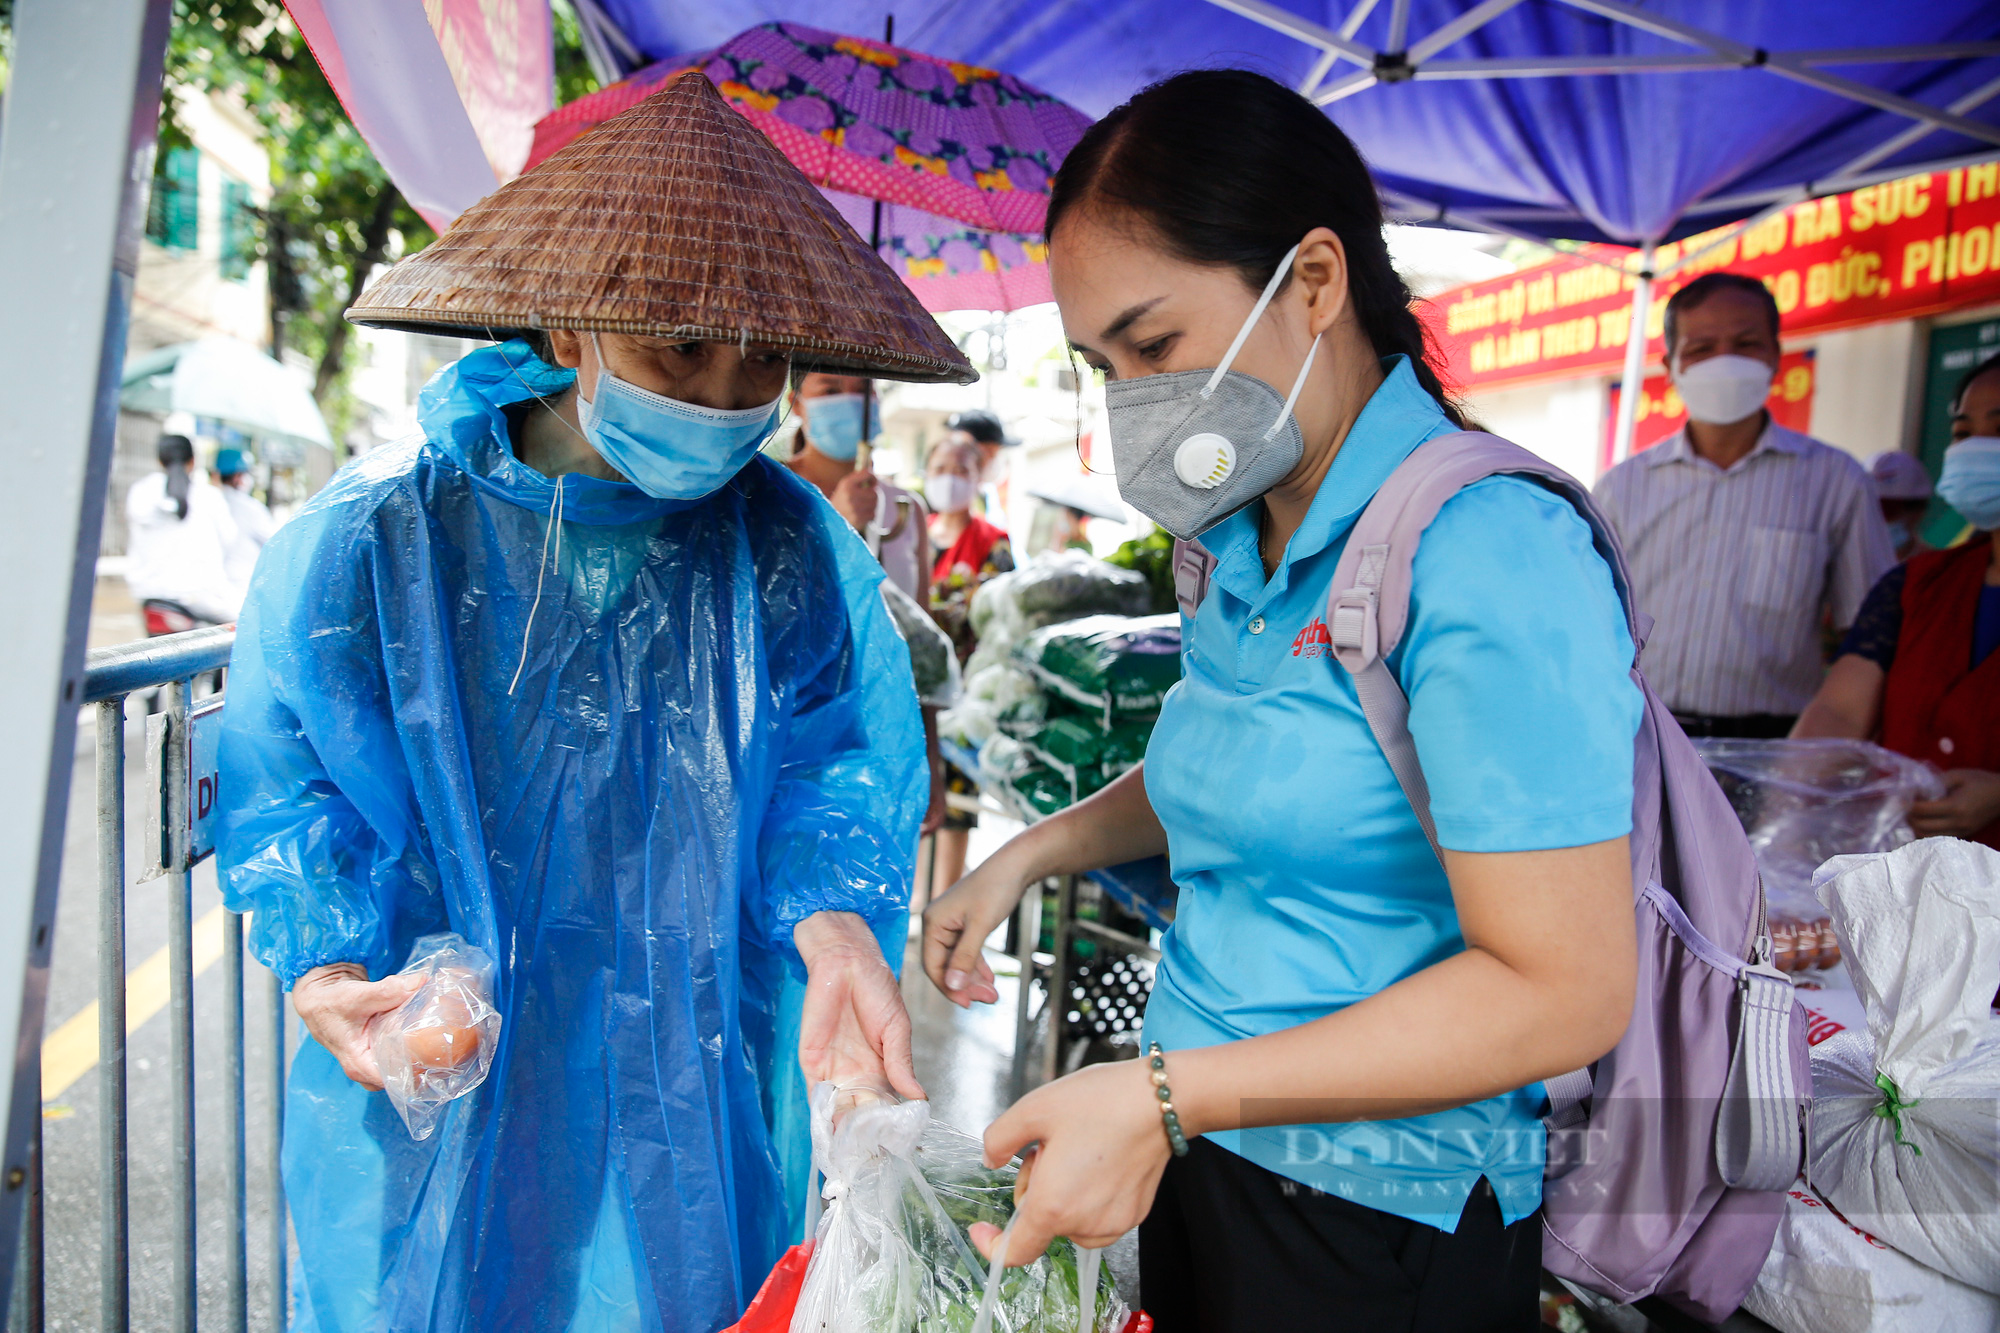 Báo NTNN/Dân Việt trao tặng 400 suất quà cho người lao động có hoàn cảnh khó khăn tại Hà Nội - Ảnh 3.